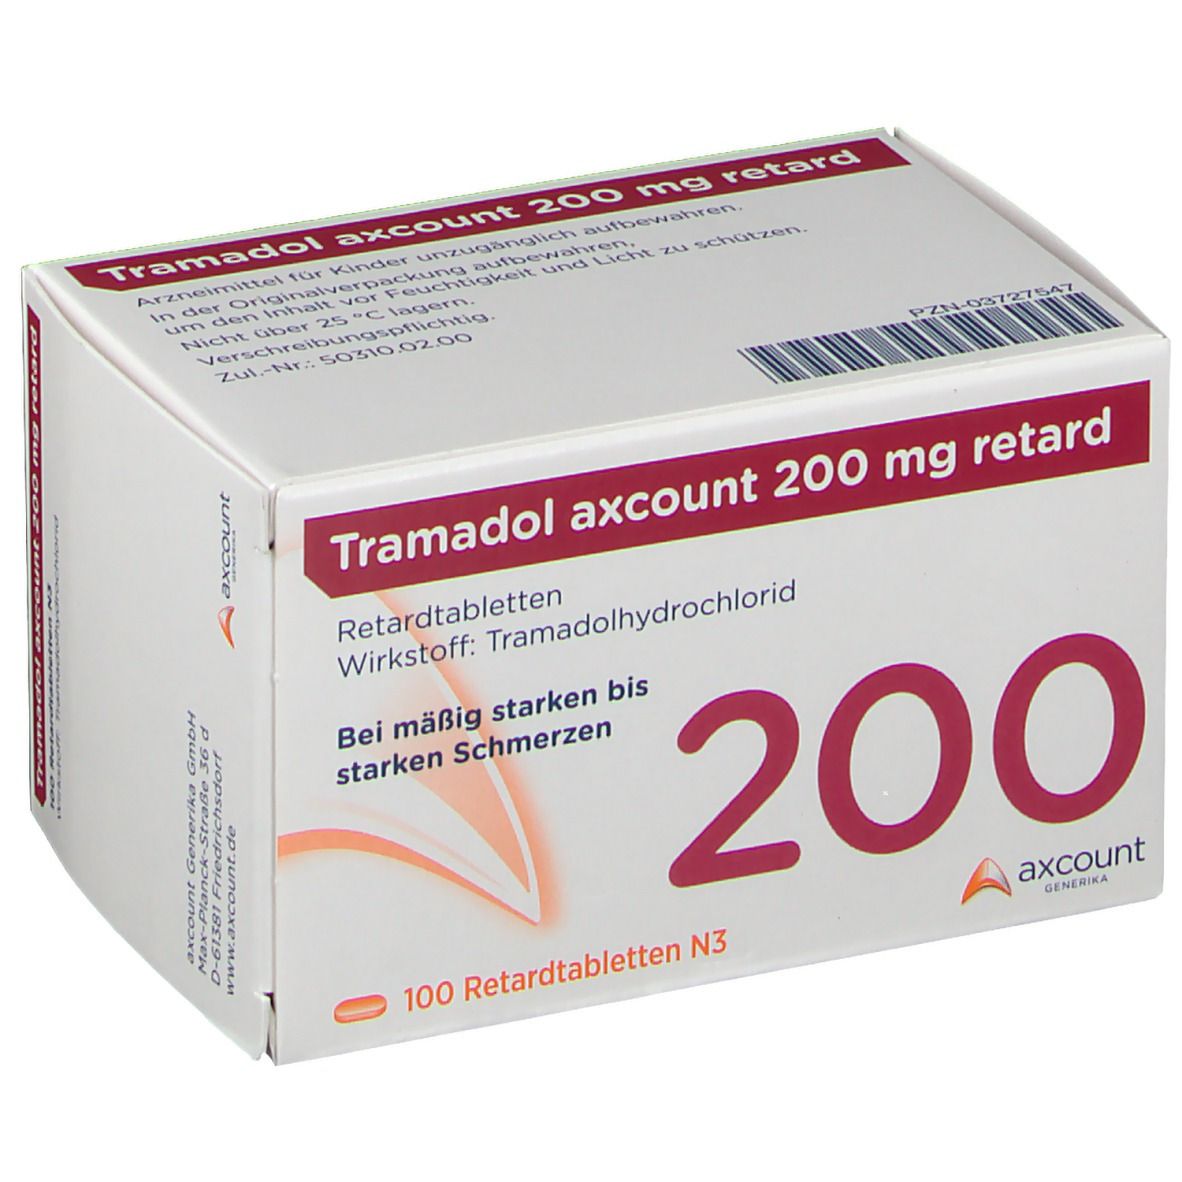 Tramadol axcount 200 mg retard